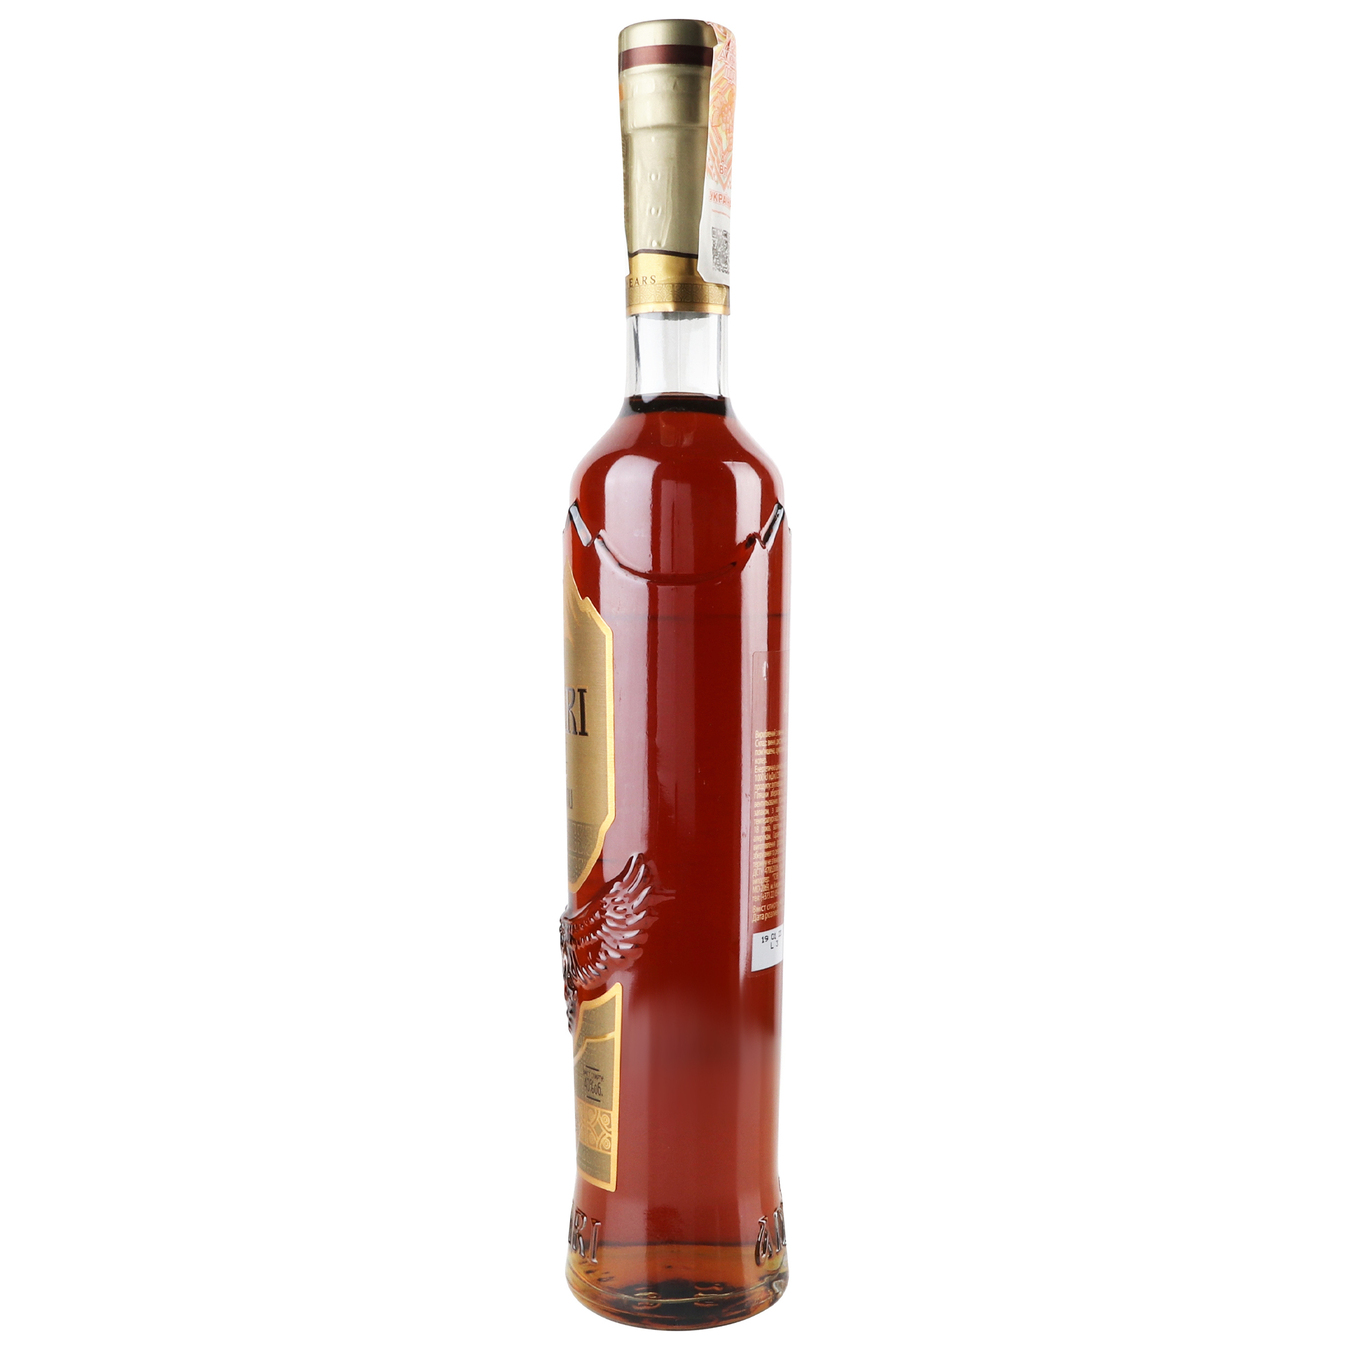 Cognac Adjari 4 stars 40% 0.5 l 4